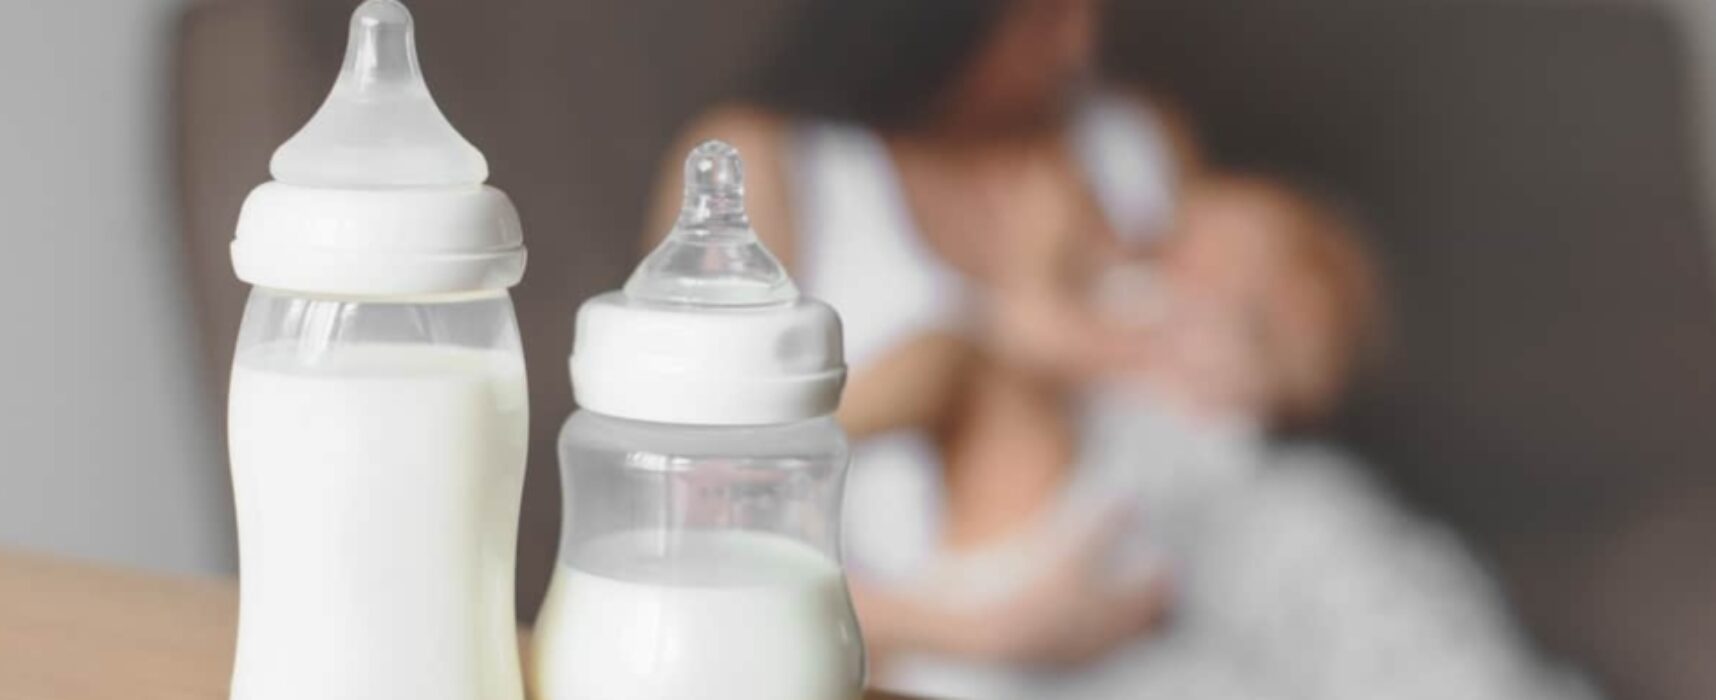 Contributo per acquisto sostituti latte materno, Asl Bat pubblica modalità per la richiesta